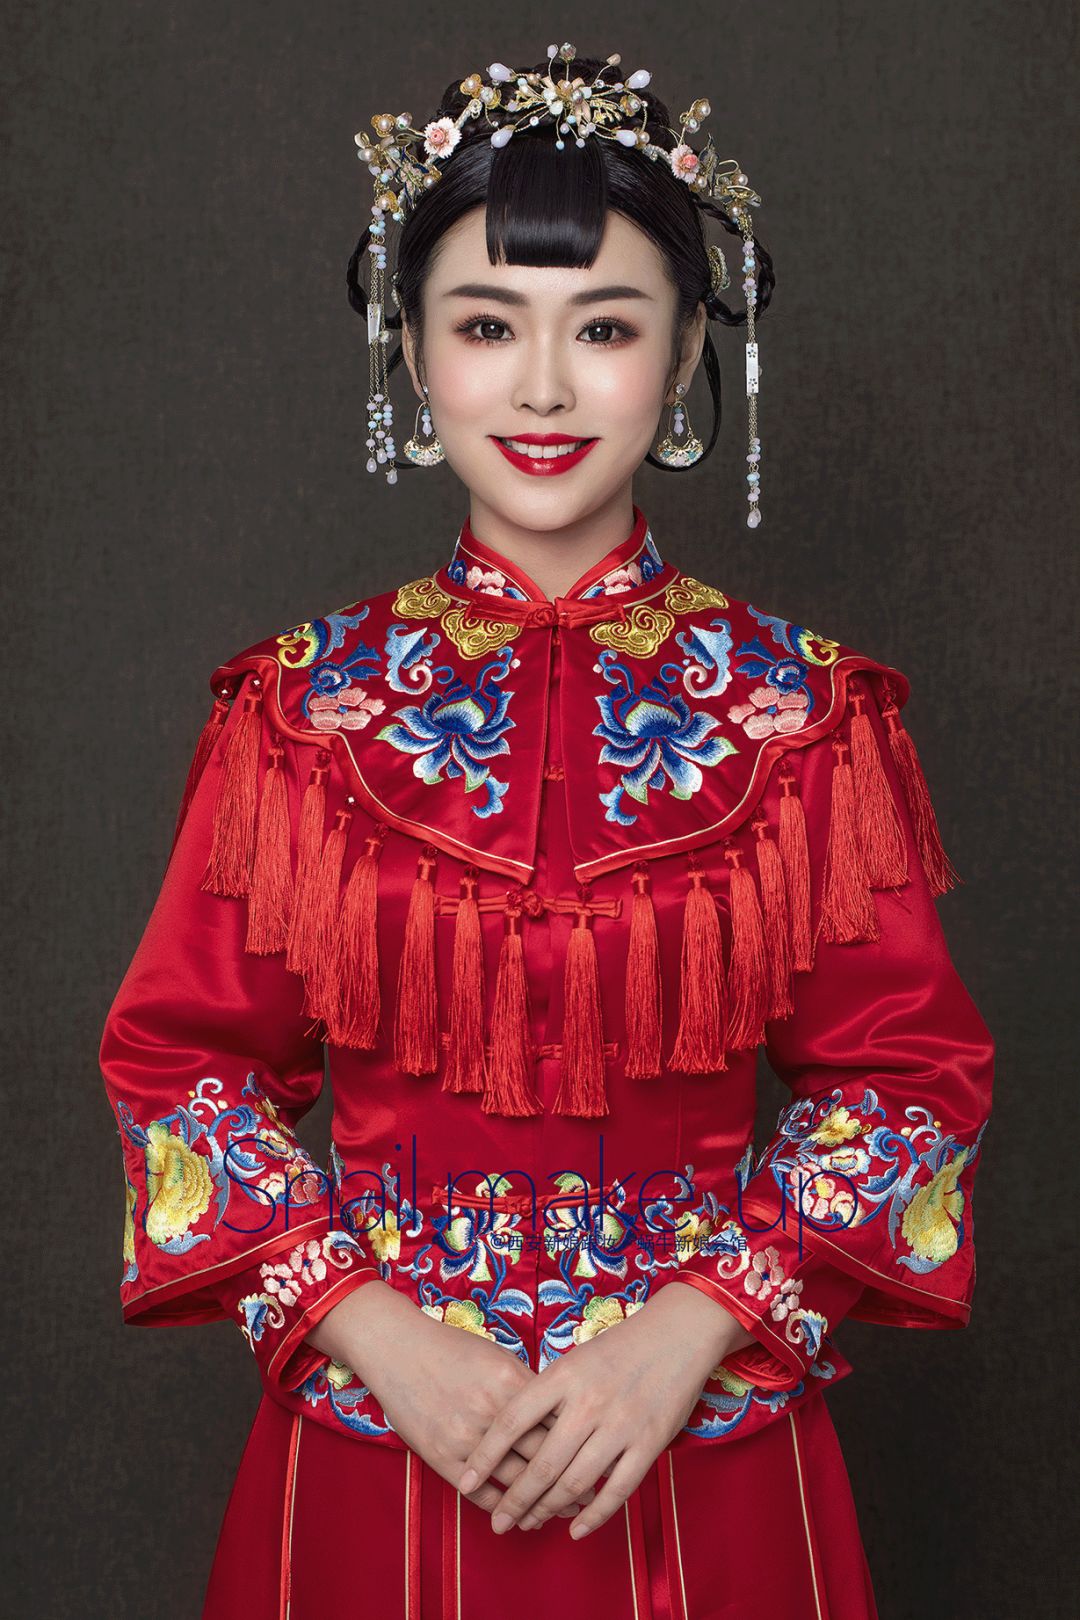 精致的中式新娘造型,浓浓东方情韵!